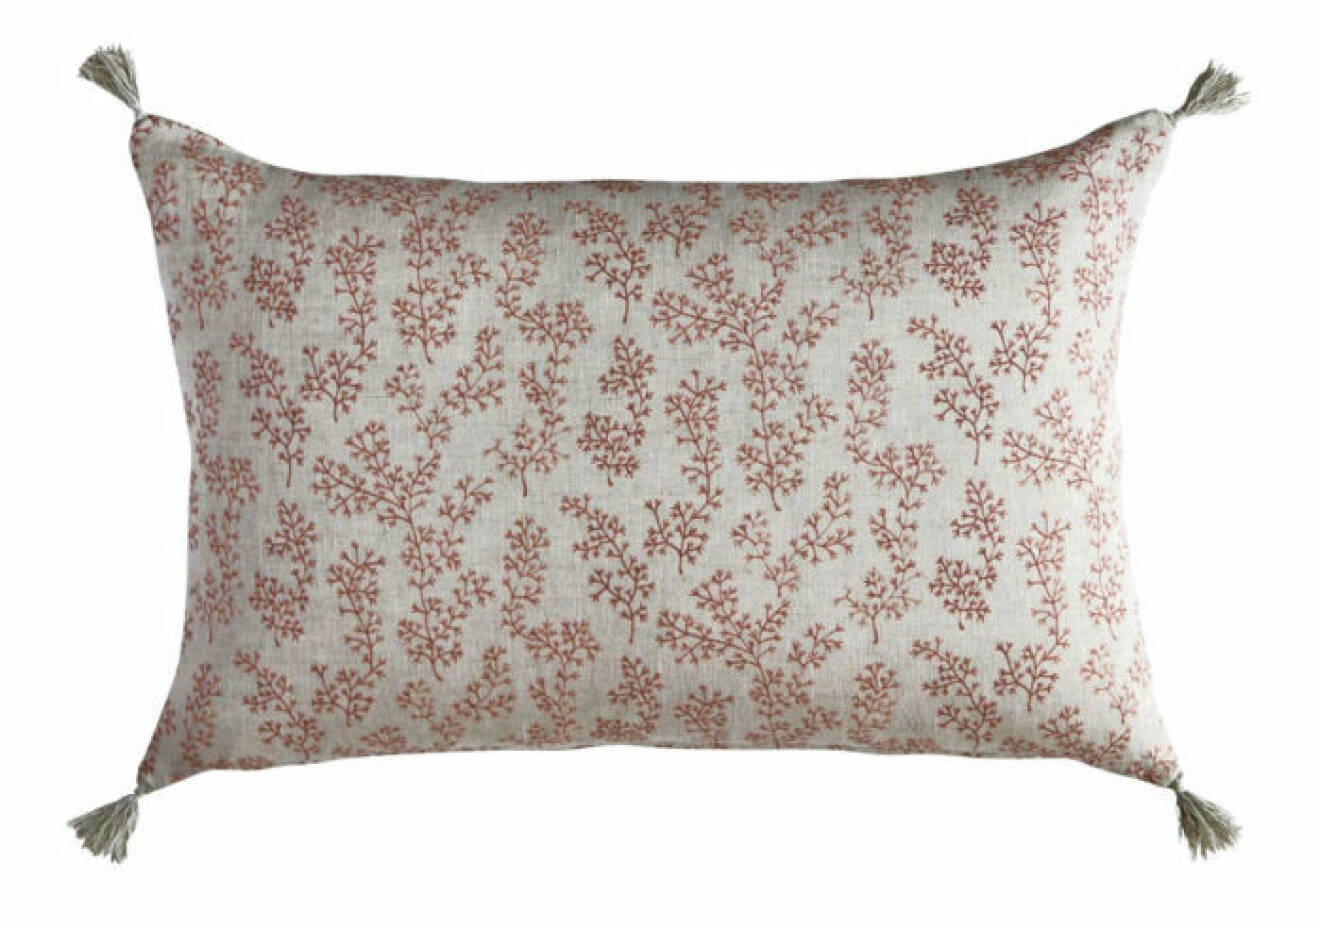 Franstofsar på ljusrosa kudde med mönster